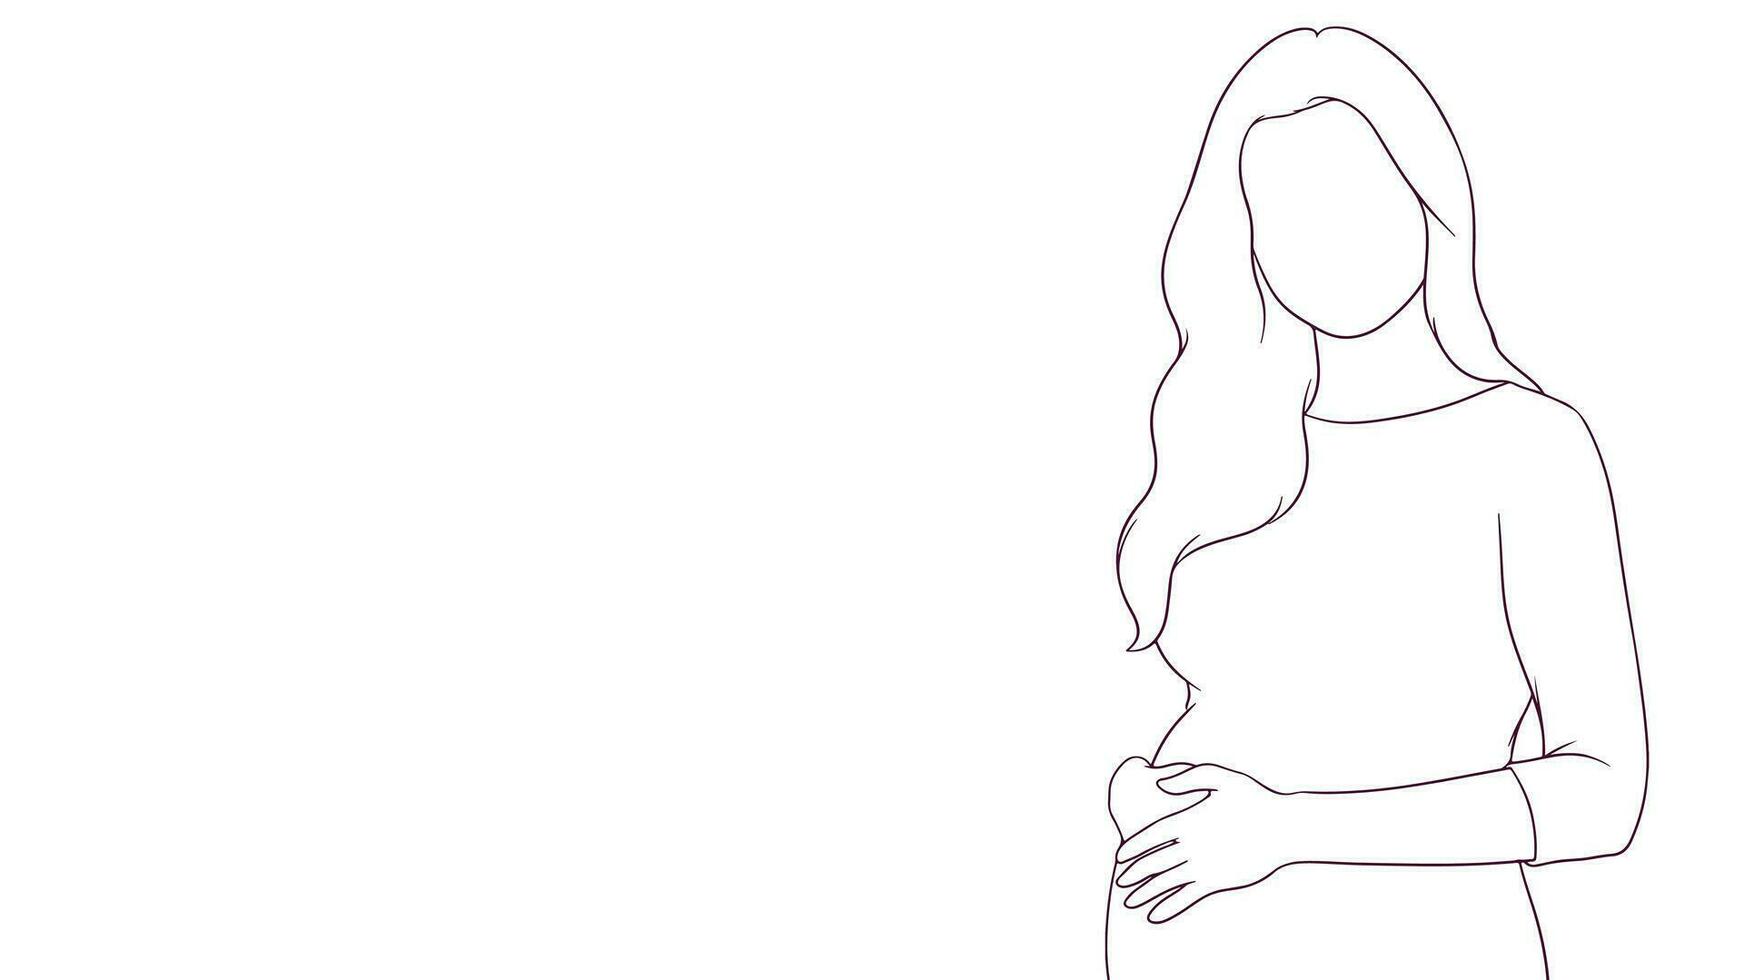 zwanger mam aanhankelijk tintje Aan haar buik, hand- getrokken stijl vector illustratie